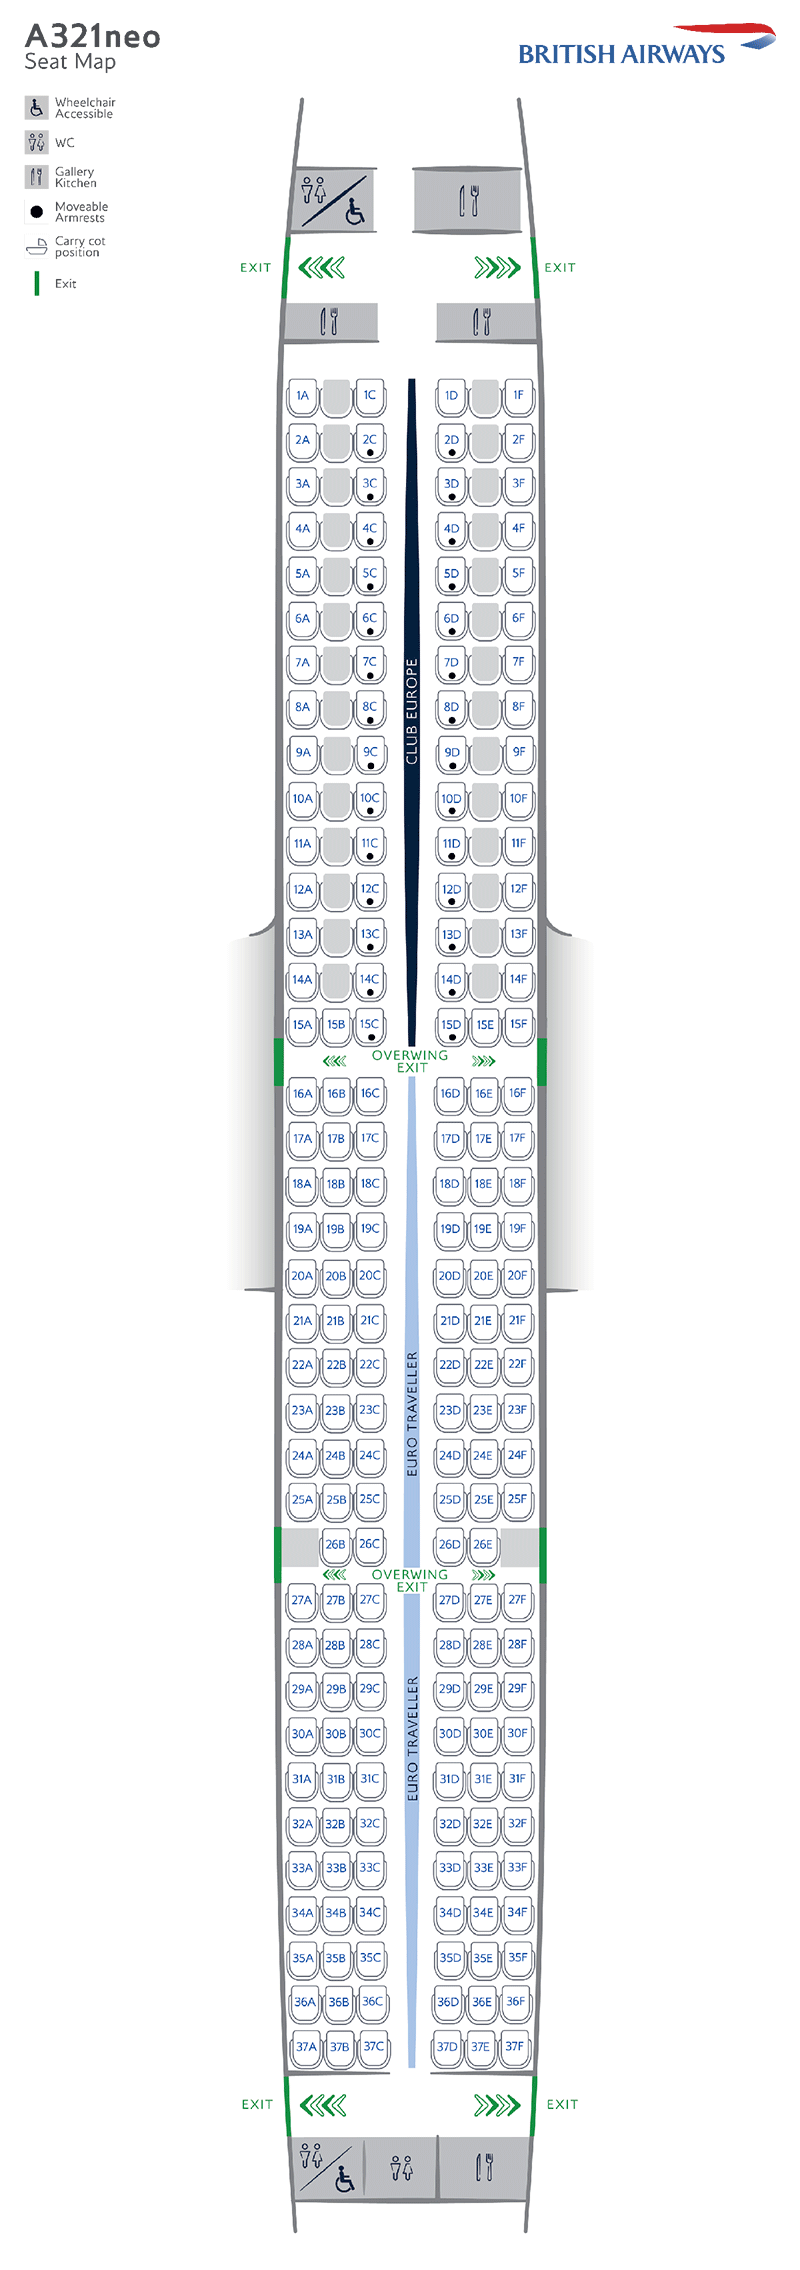 A321 seatmap